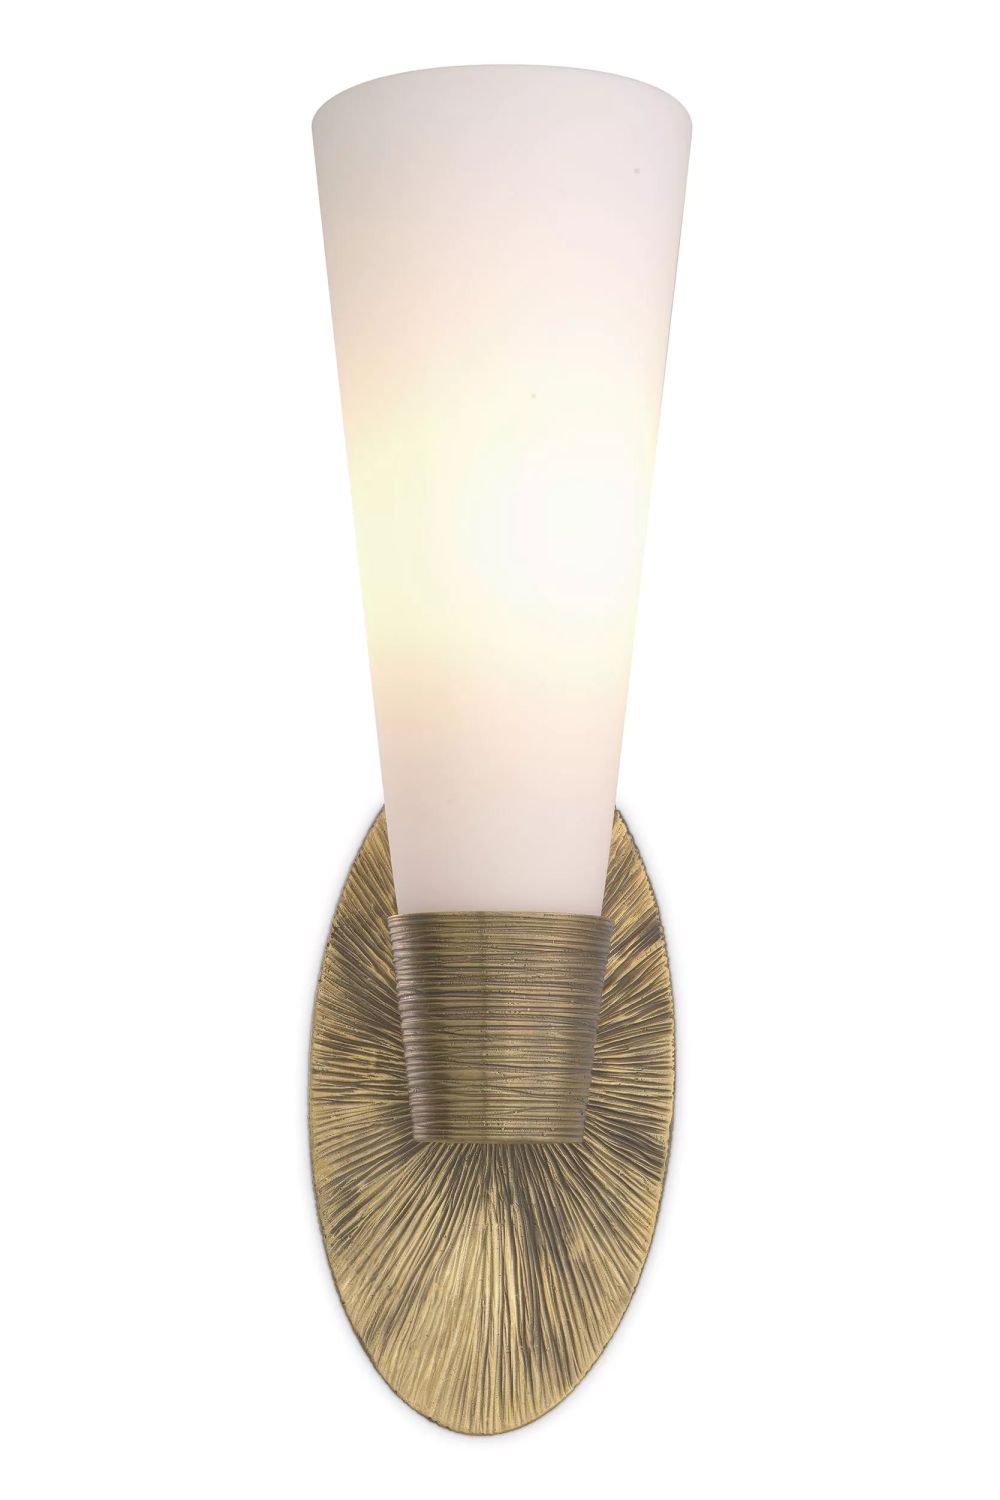 White Glass Wall Lamp | Eichholtz Nolita | OROA